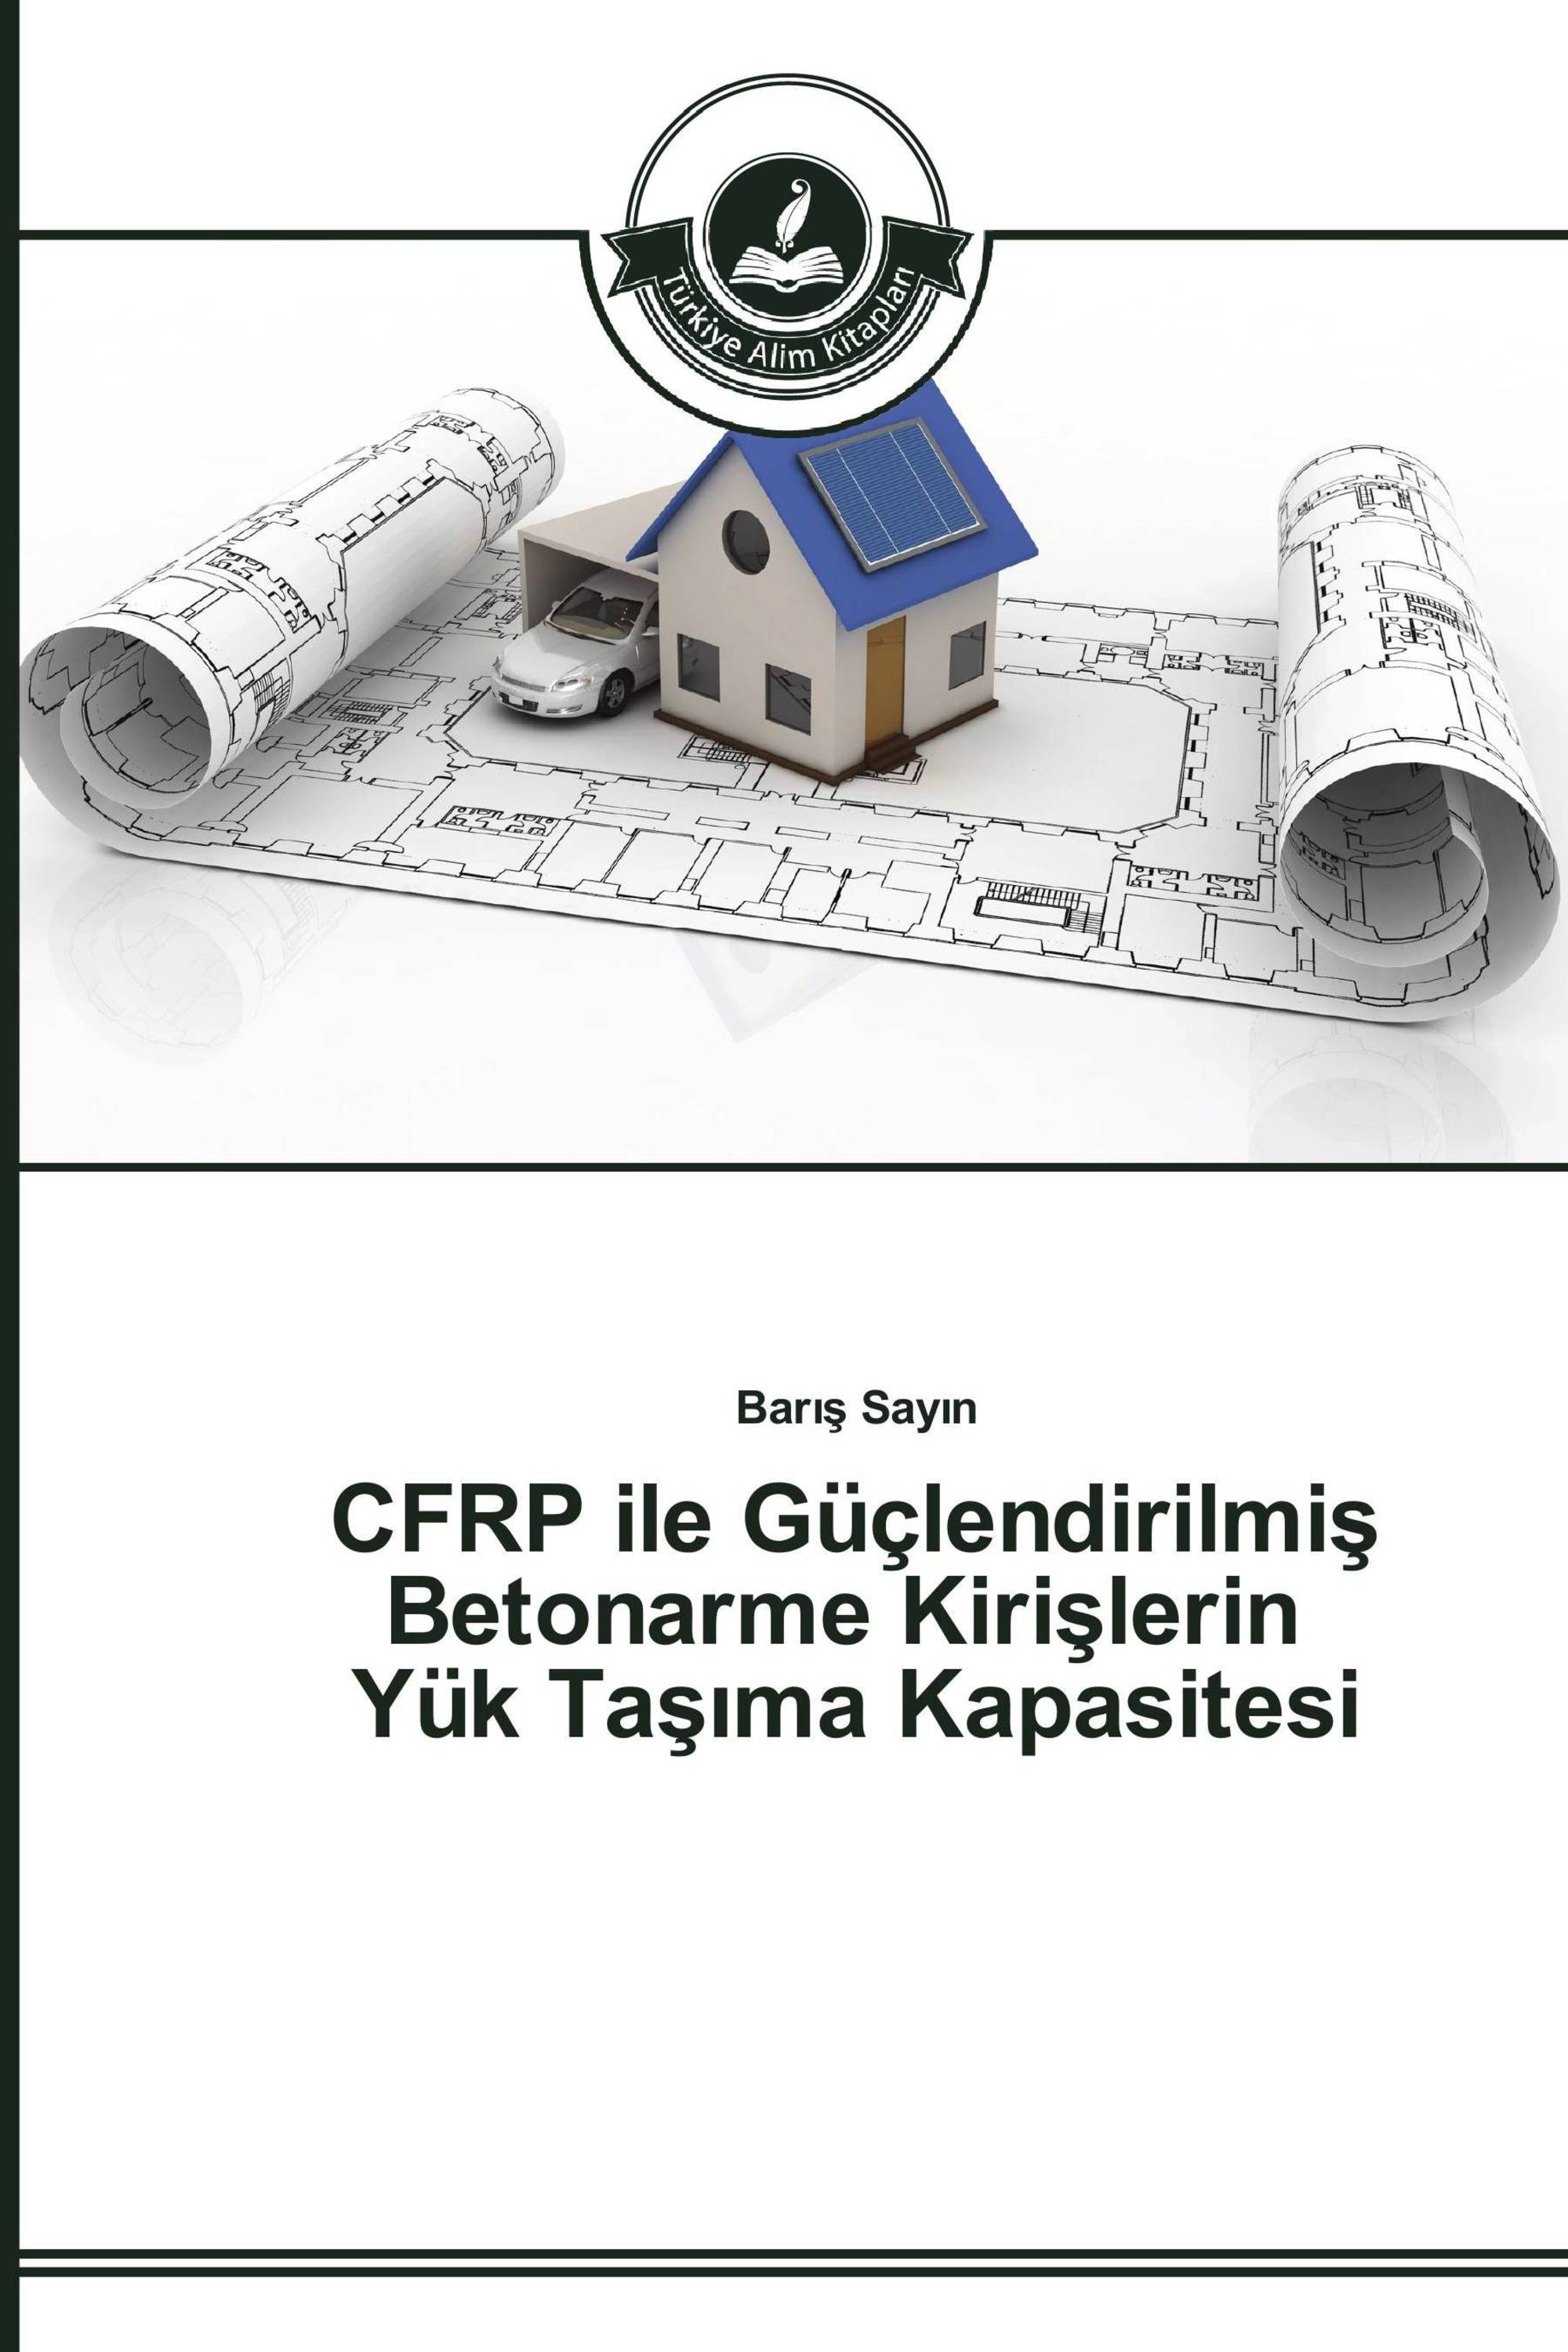 CFRP ile Güçlendirilmiş Betonarme Kirişlerin Yük Taşıma Kapasitesi